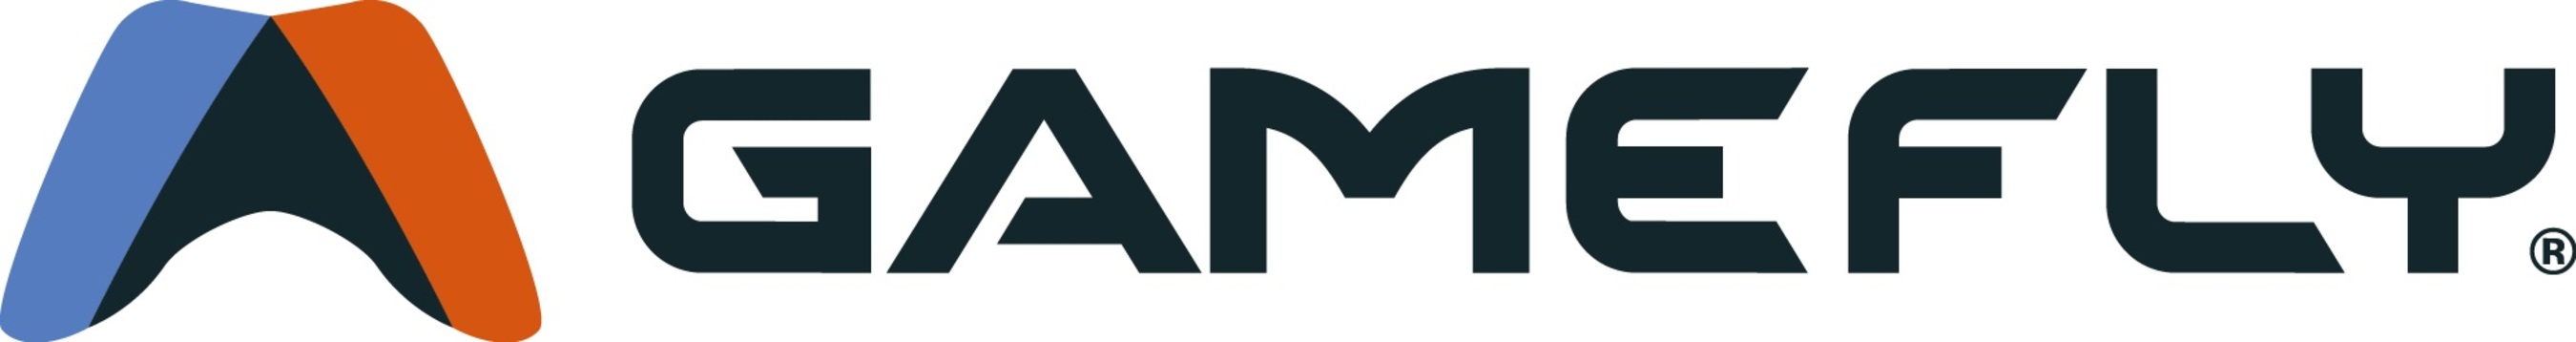 GameFly Logo.